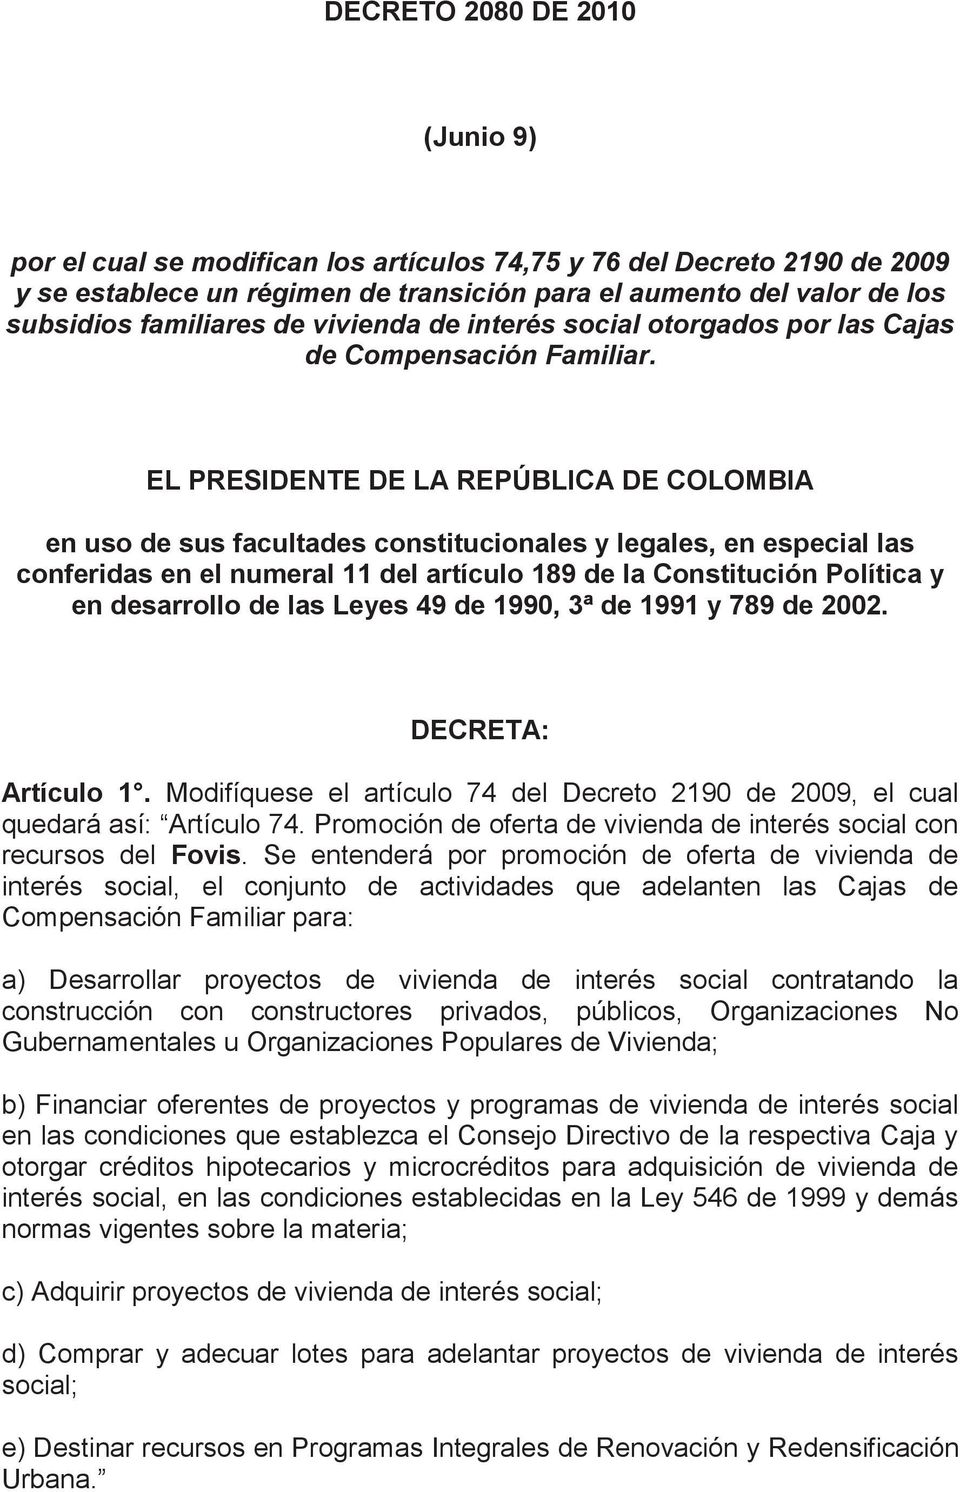 EL PRESIDENTE DE LA REPÚBLICA DE COLOMBIA en uso de sus facultades constitucionales y legales, en especial las conferidas en el numeral 11 del artículo 189 de la Constitución Política y en desarrollo